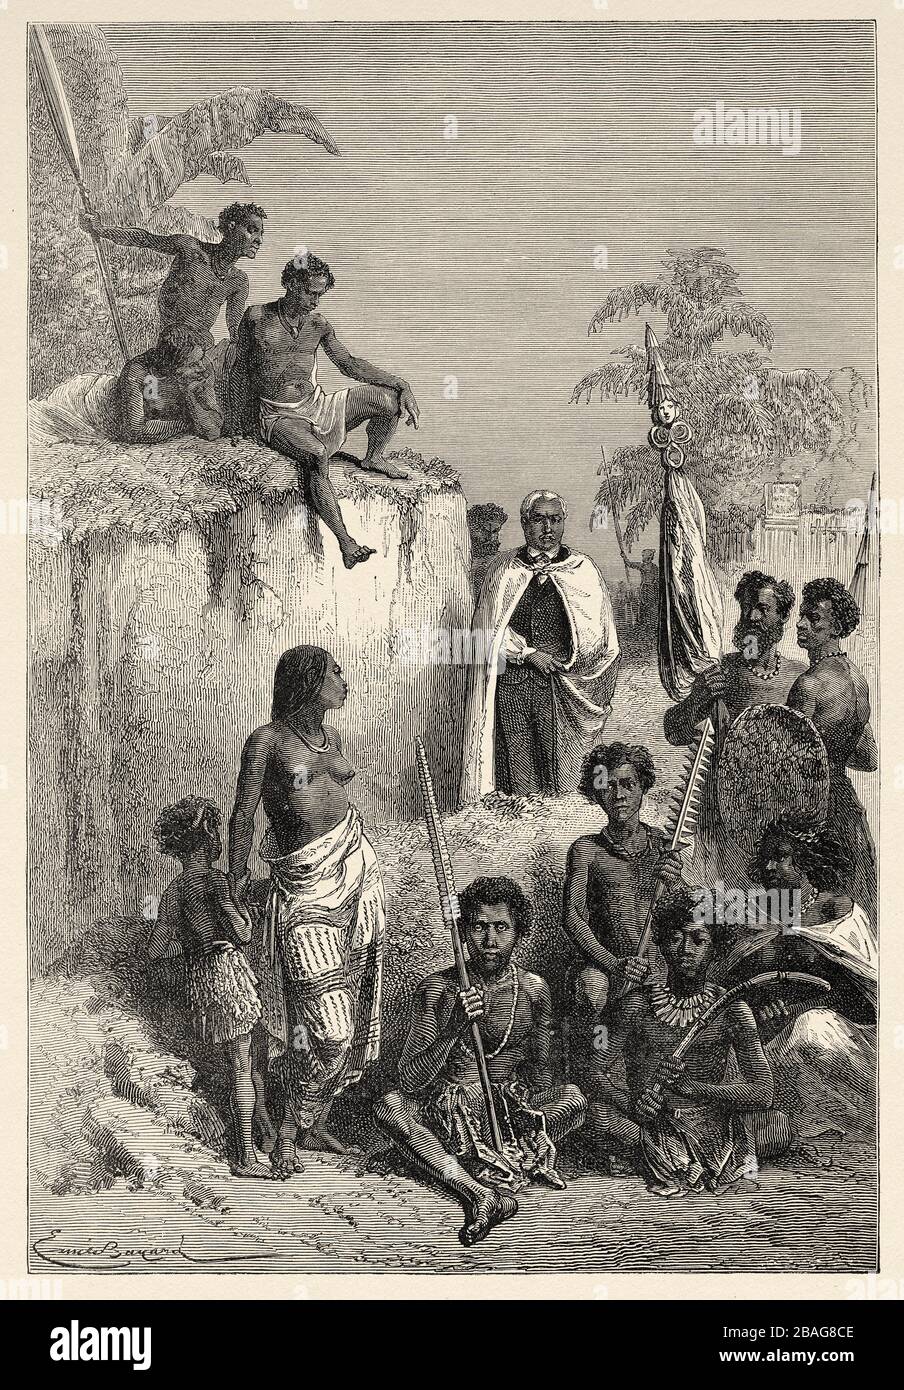 Kamehameha i il Grande (1758 - 1819) monarca hawaiano che unificò le isole hawaiane e istituì formalmente il Regno delle Hawaii nel 1810. Hawaii, Foto Stock